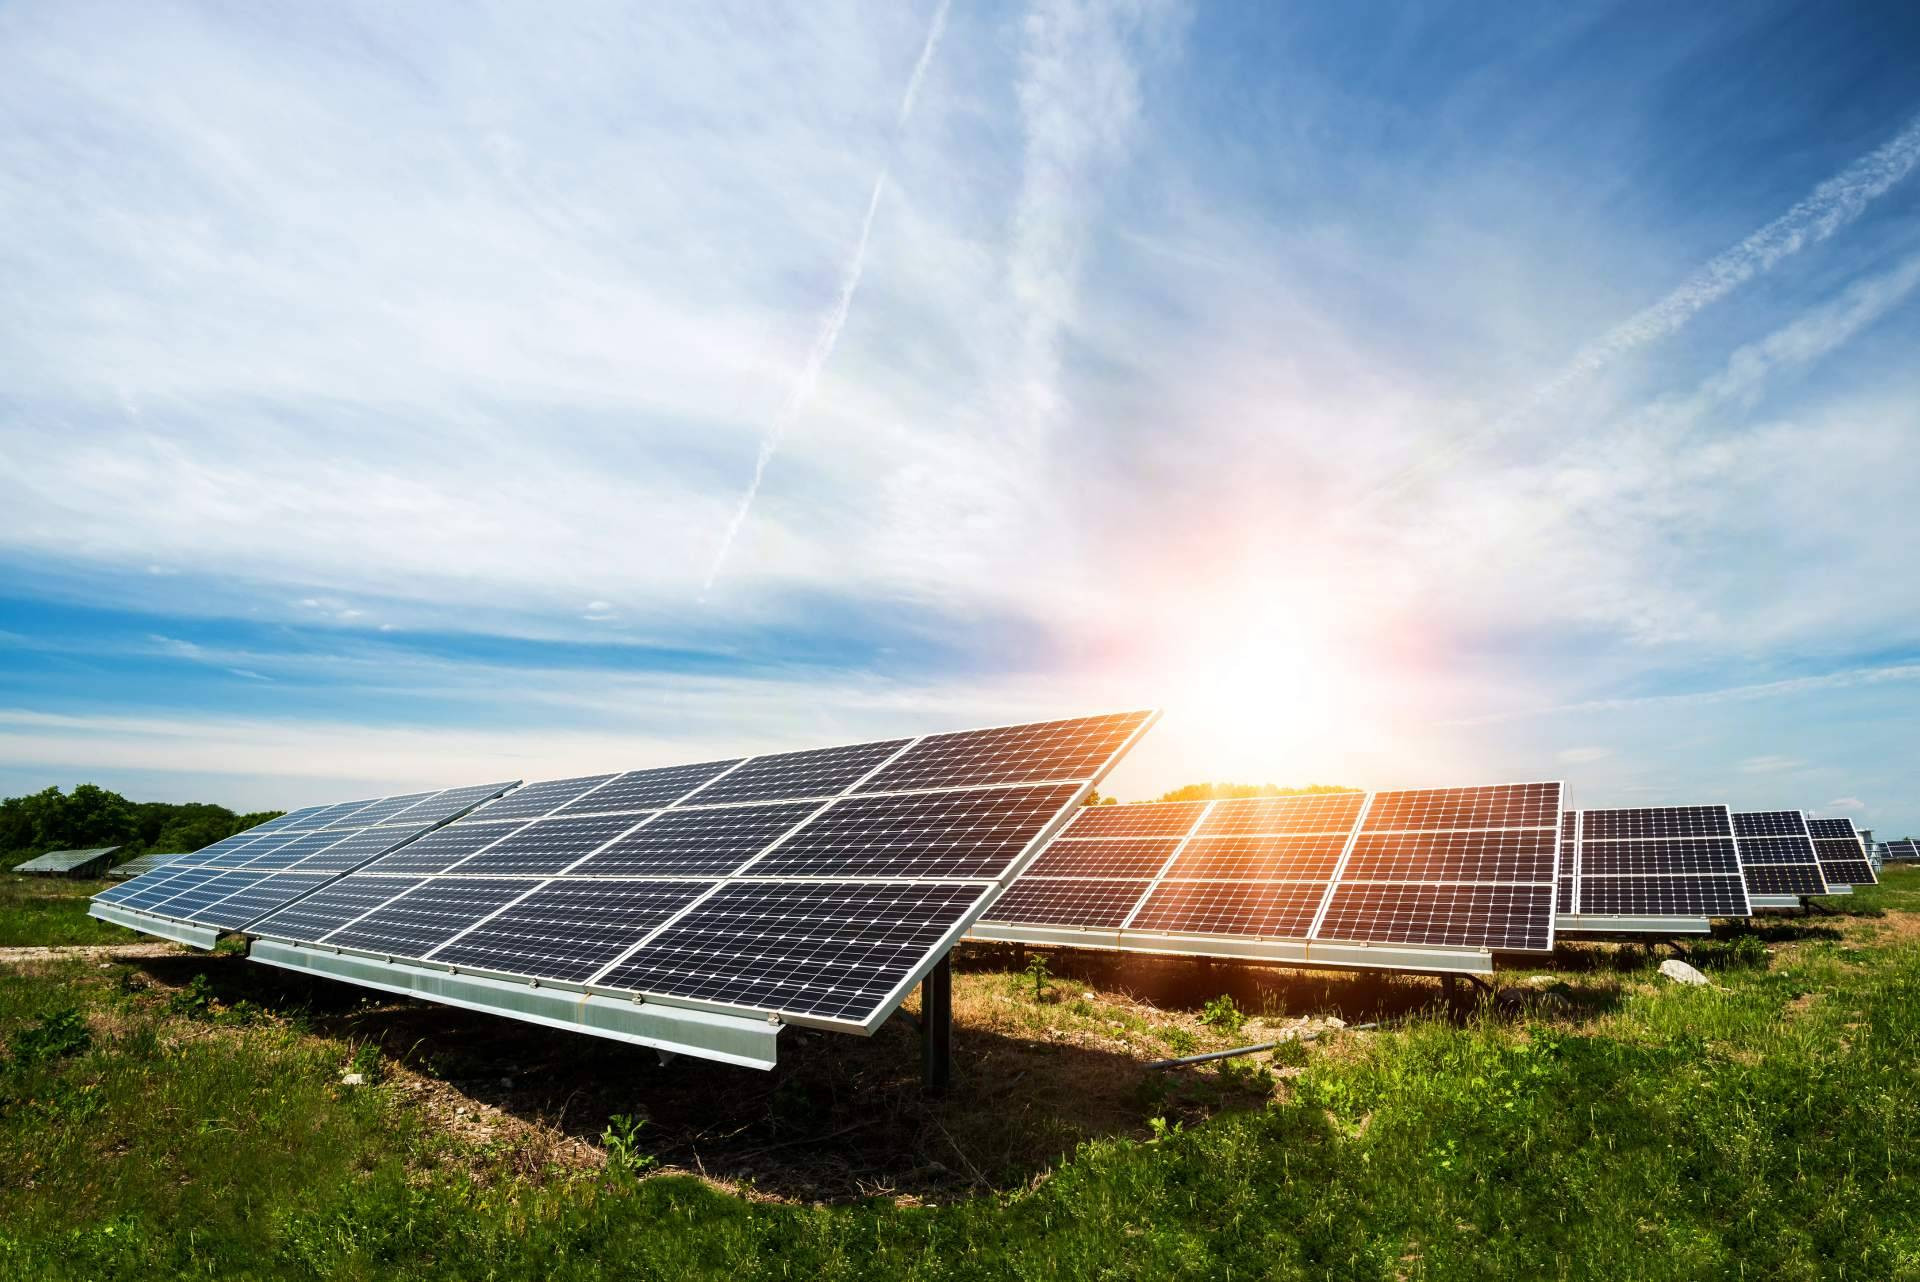  Aprovechar el poder del sol; instalar paneles solares con Factorenergía para un futuro sostenible 